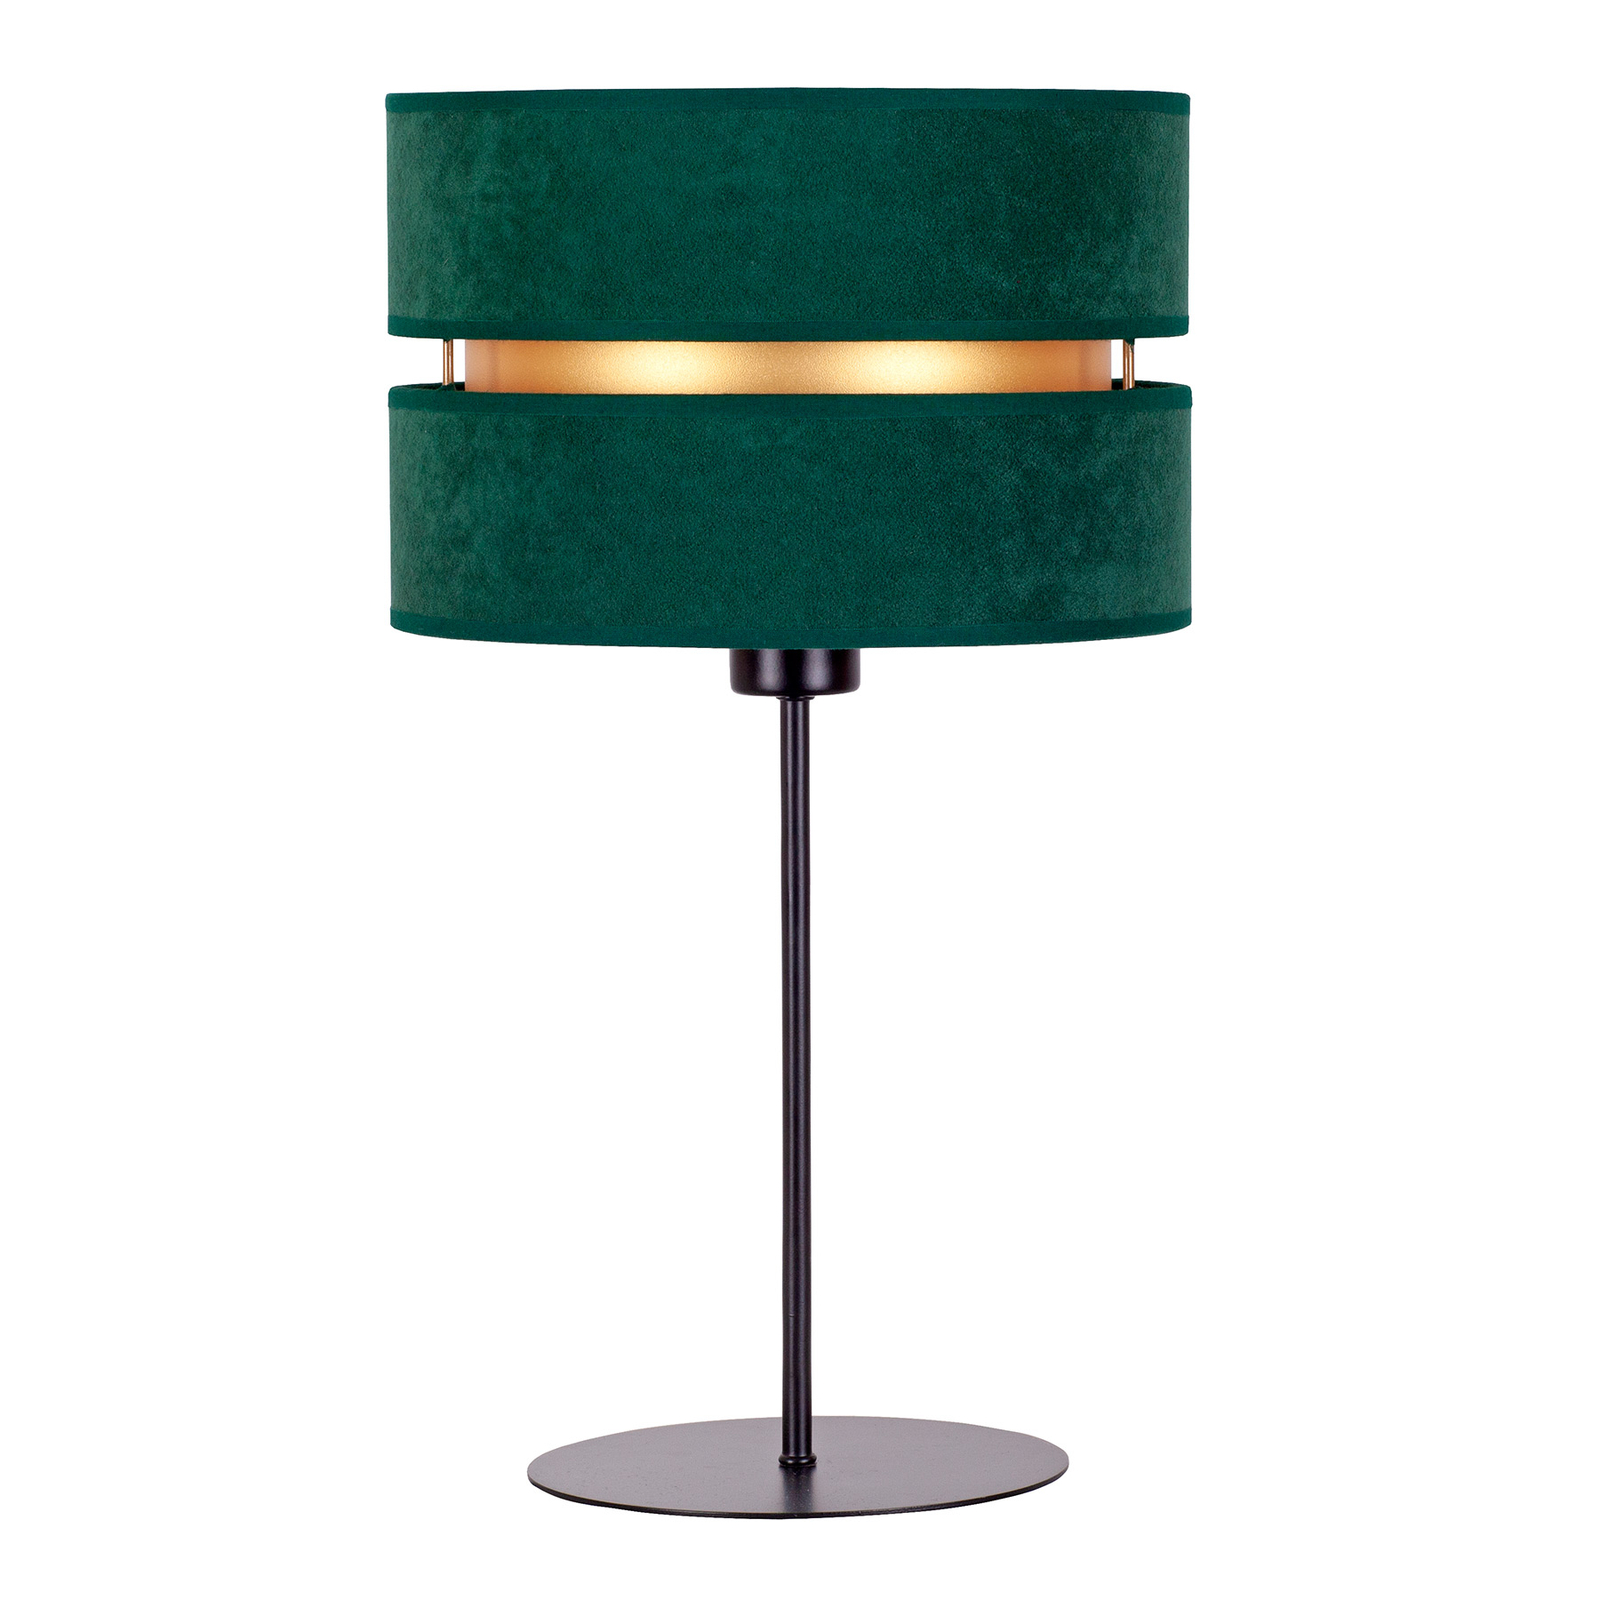 Tafellamp Duo, groen/goud, hoogte 50 cm